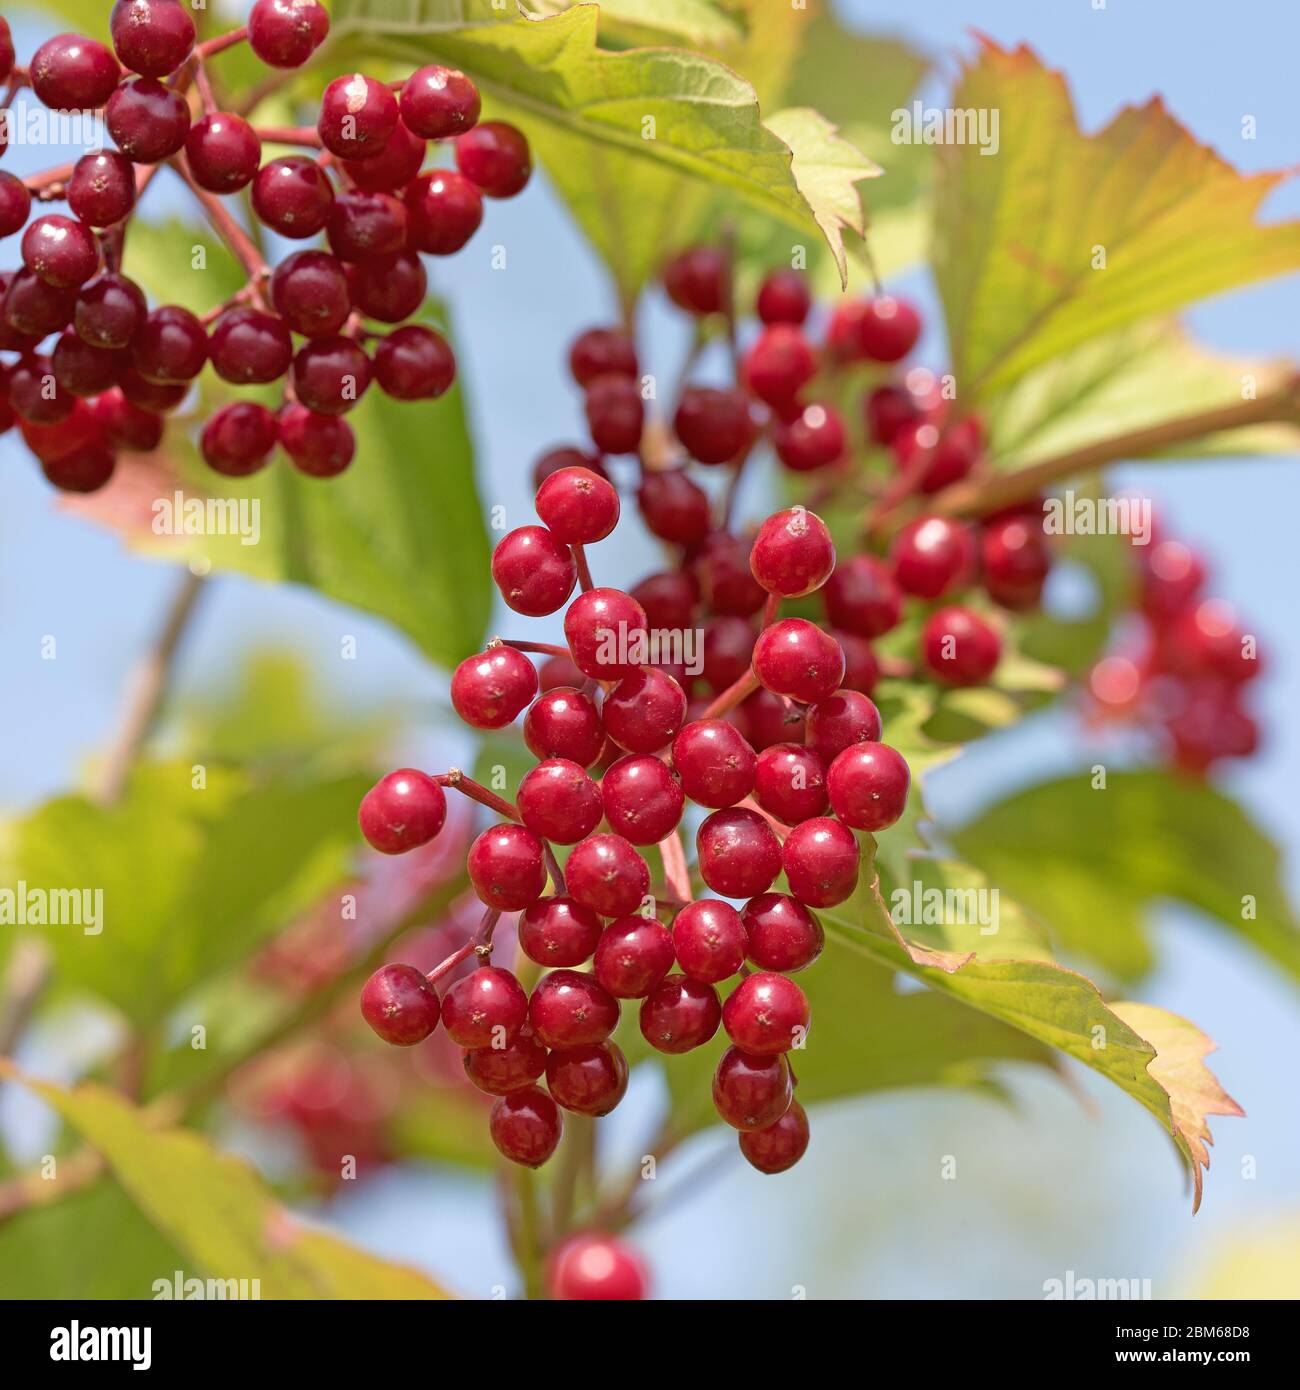 Fruits of the Viburnum opulus in autumn Stock Photo